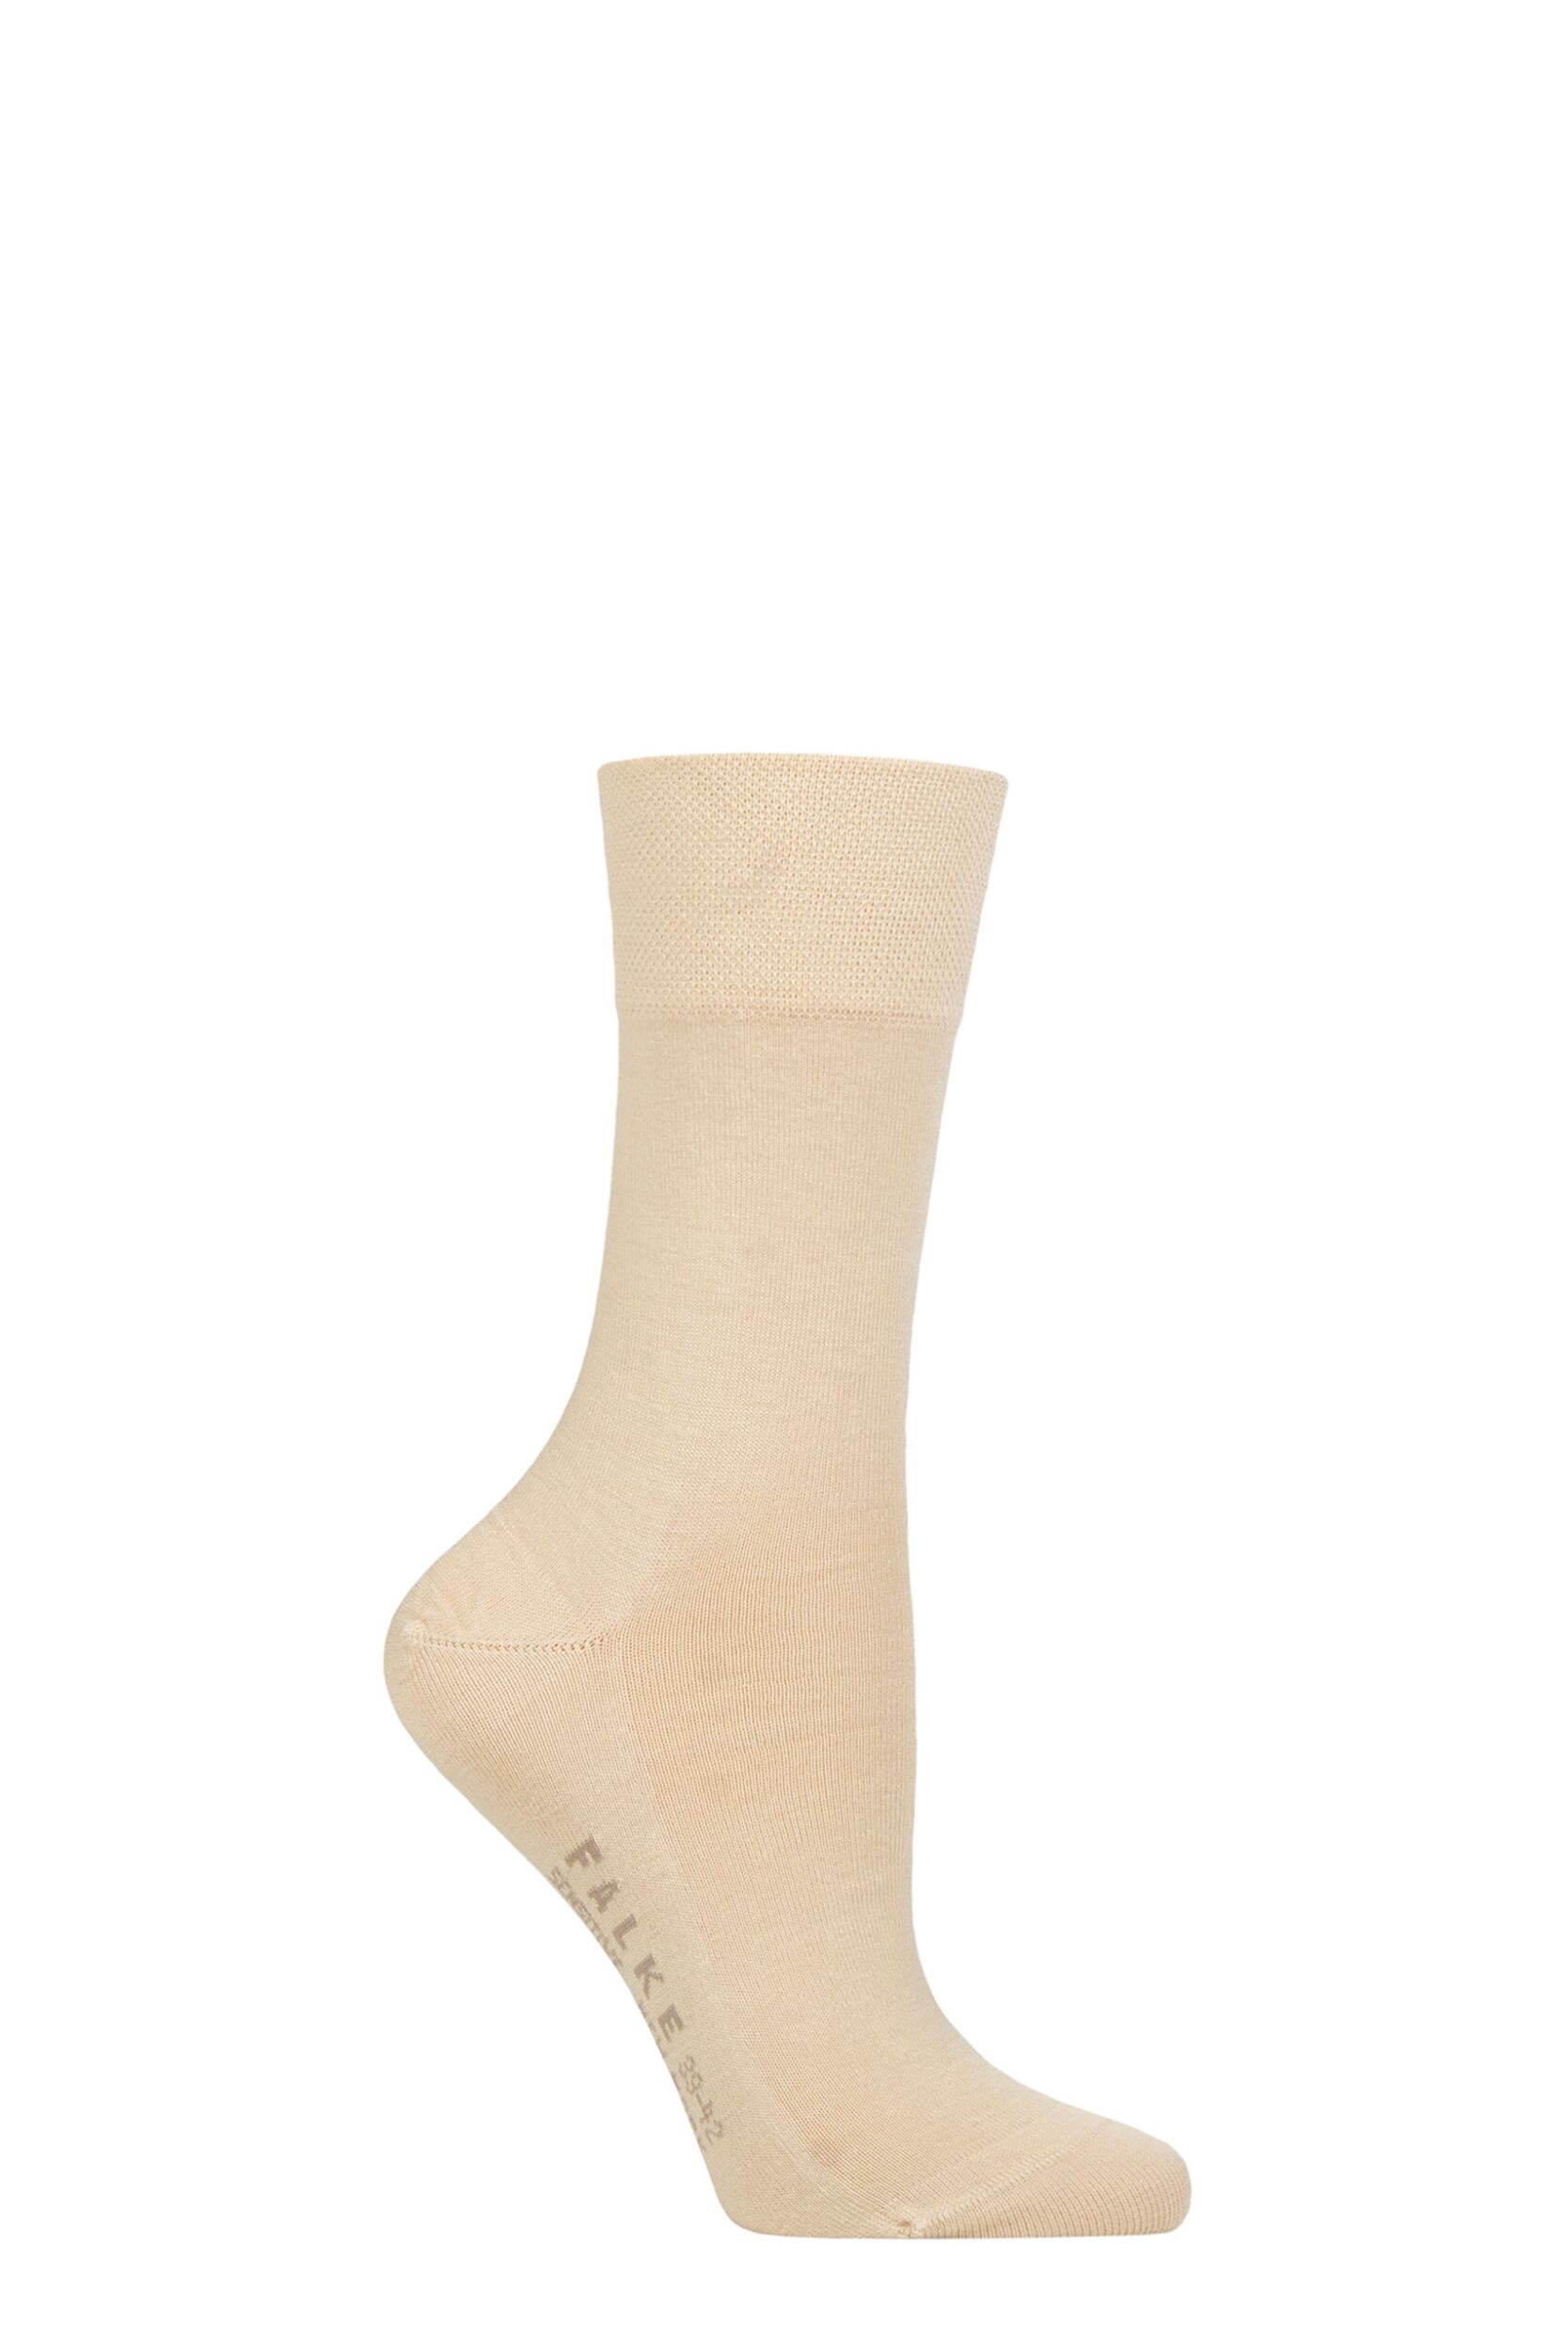 Ladies 1 Pair Falke Sensitive New York Lyocell Gentle Grip Socks